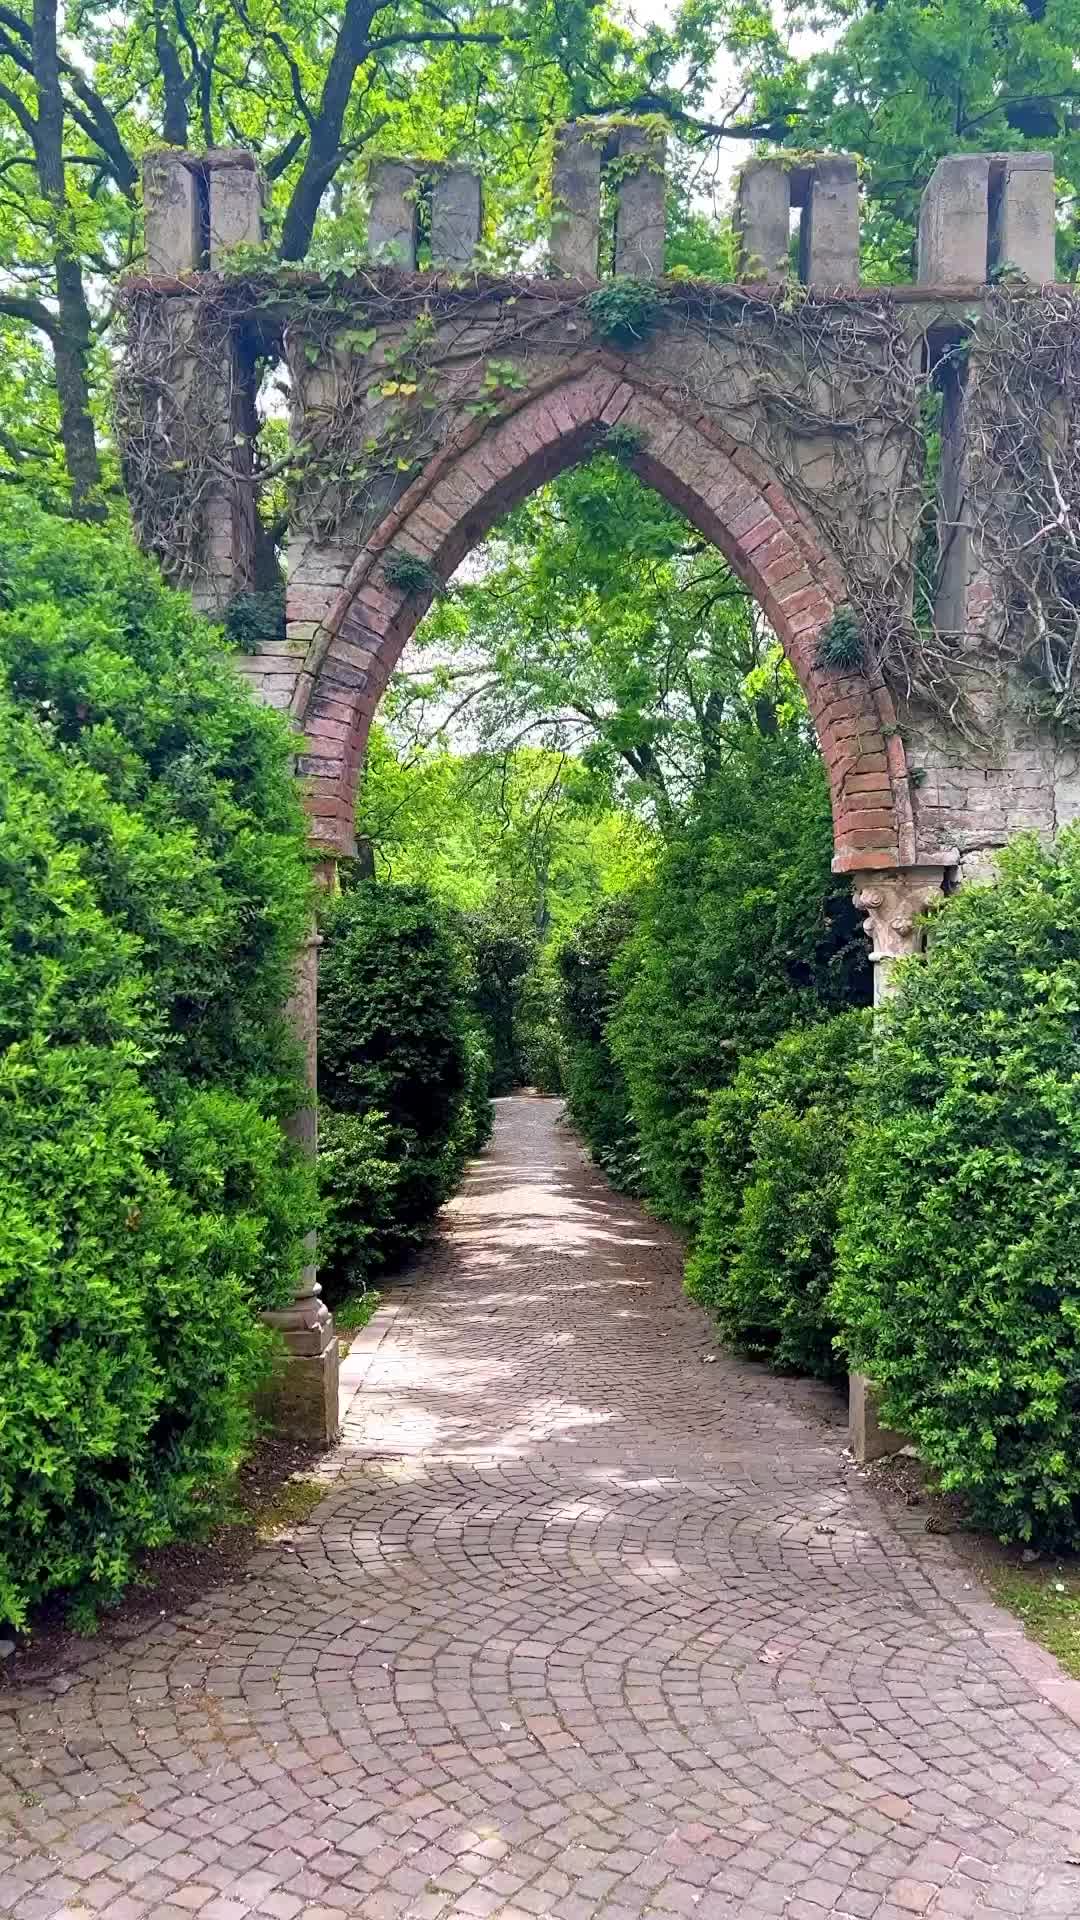 Discover Parco Giardino Sigurtá: Italy's Enchanted Garden